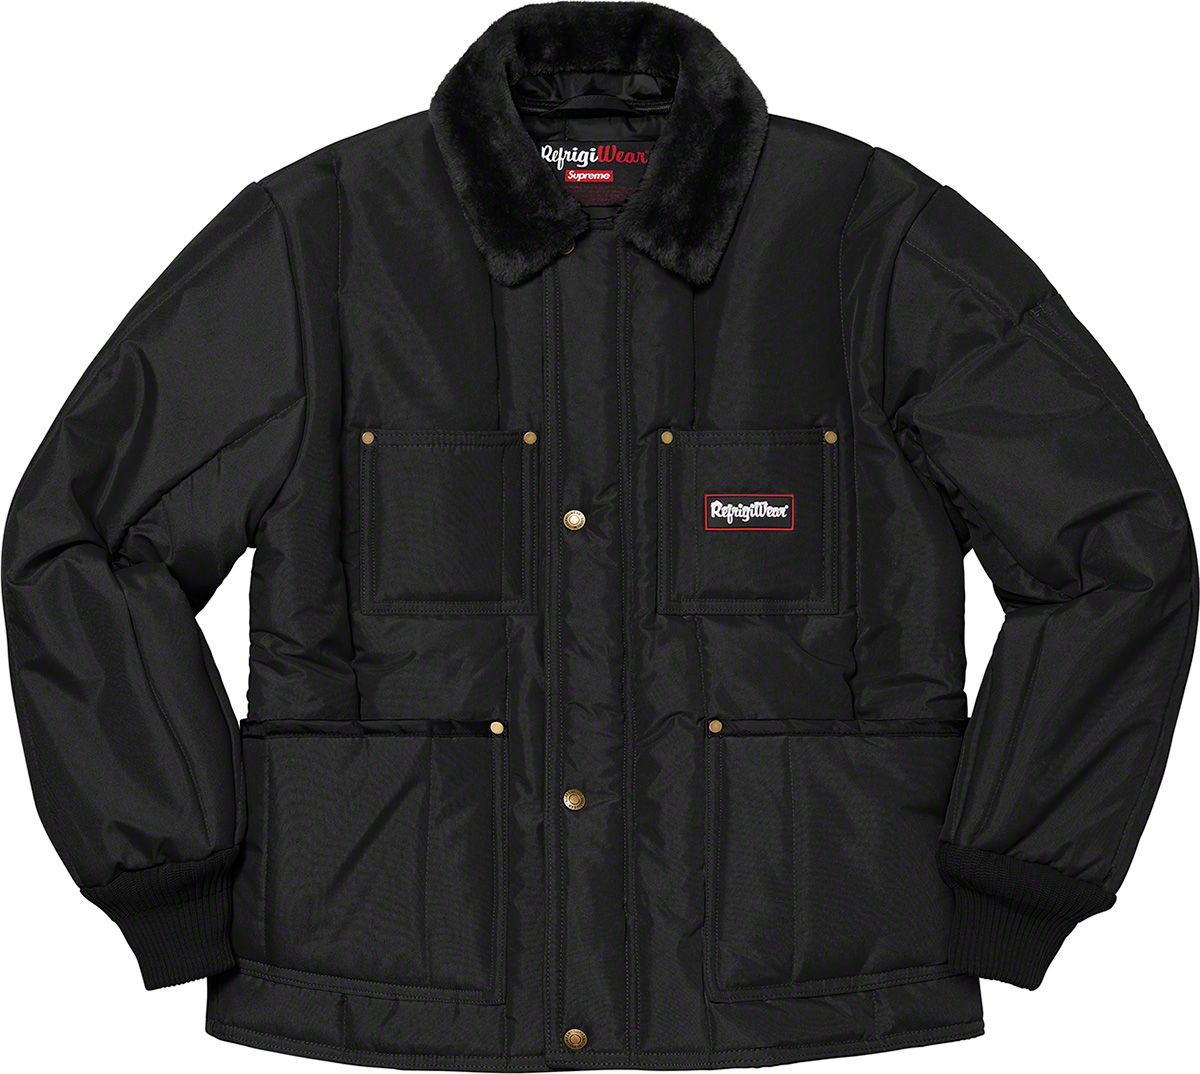 Supreme®/RefrigiWear® Insulated Iron-Tuff Vest - Fall/Winter 2020